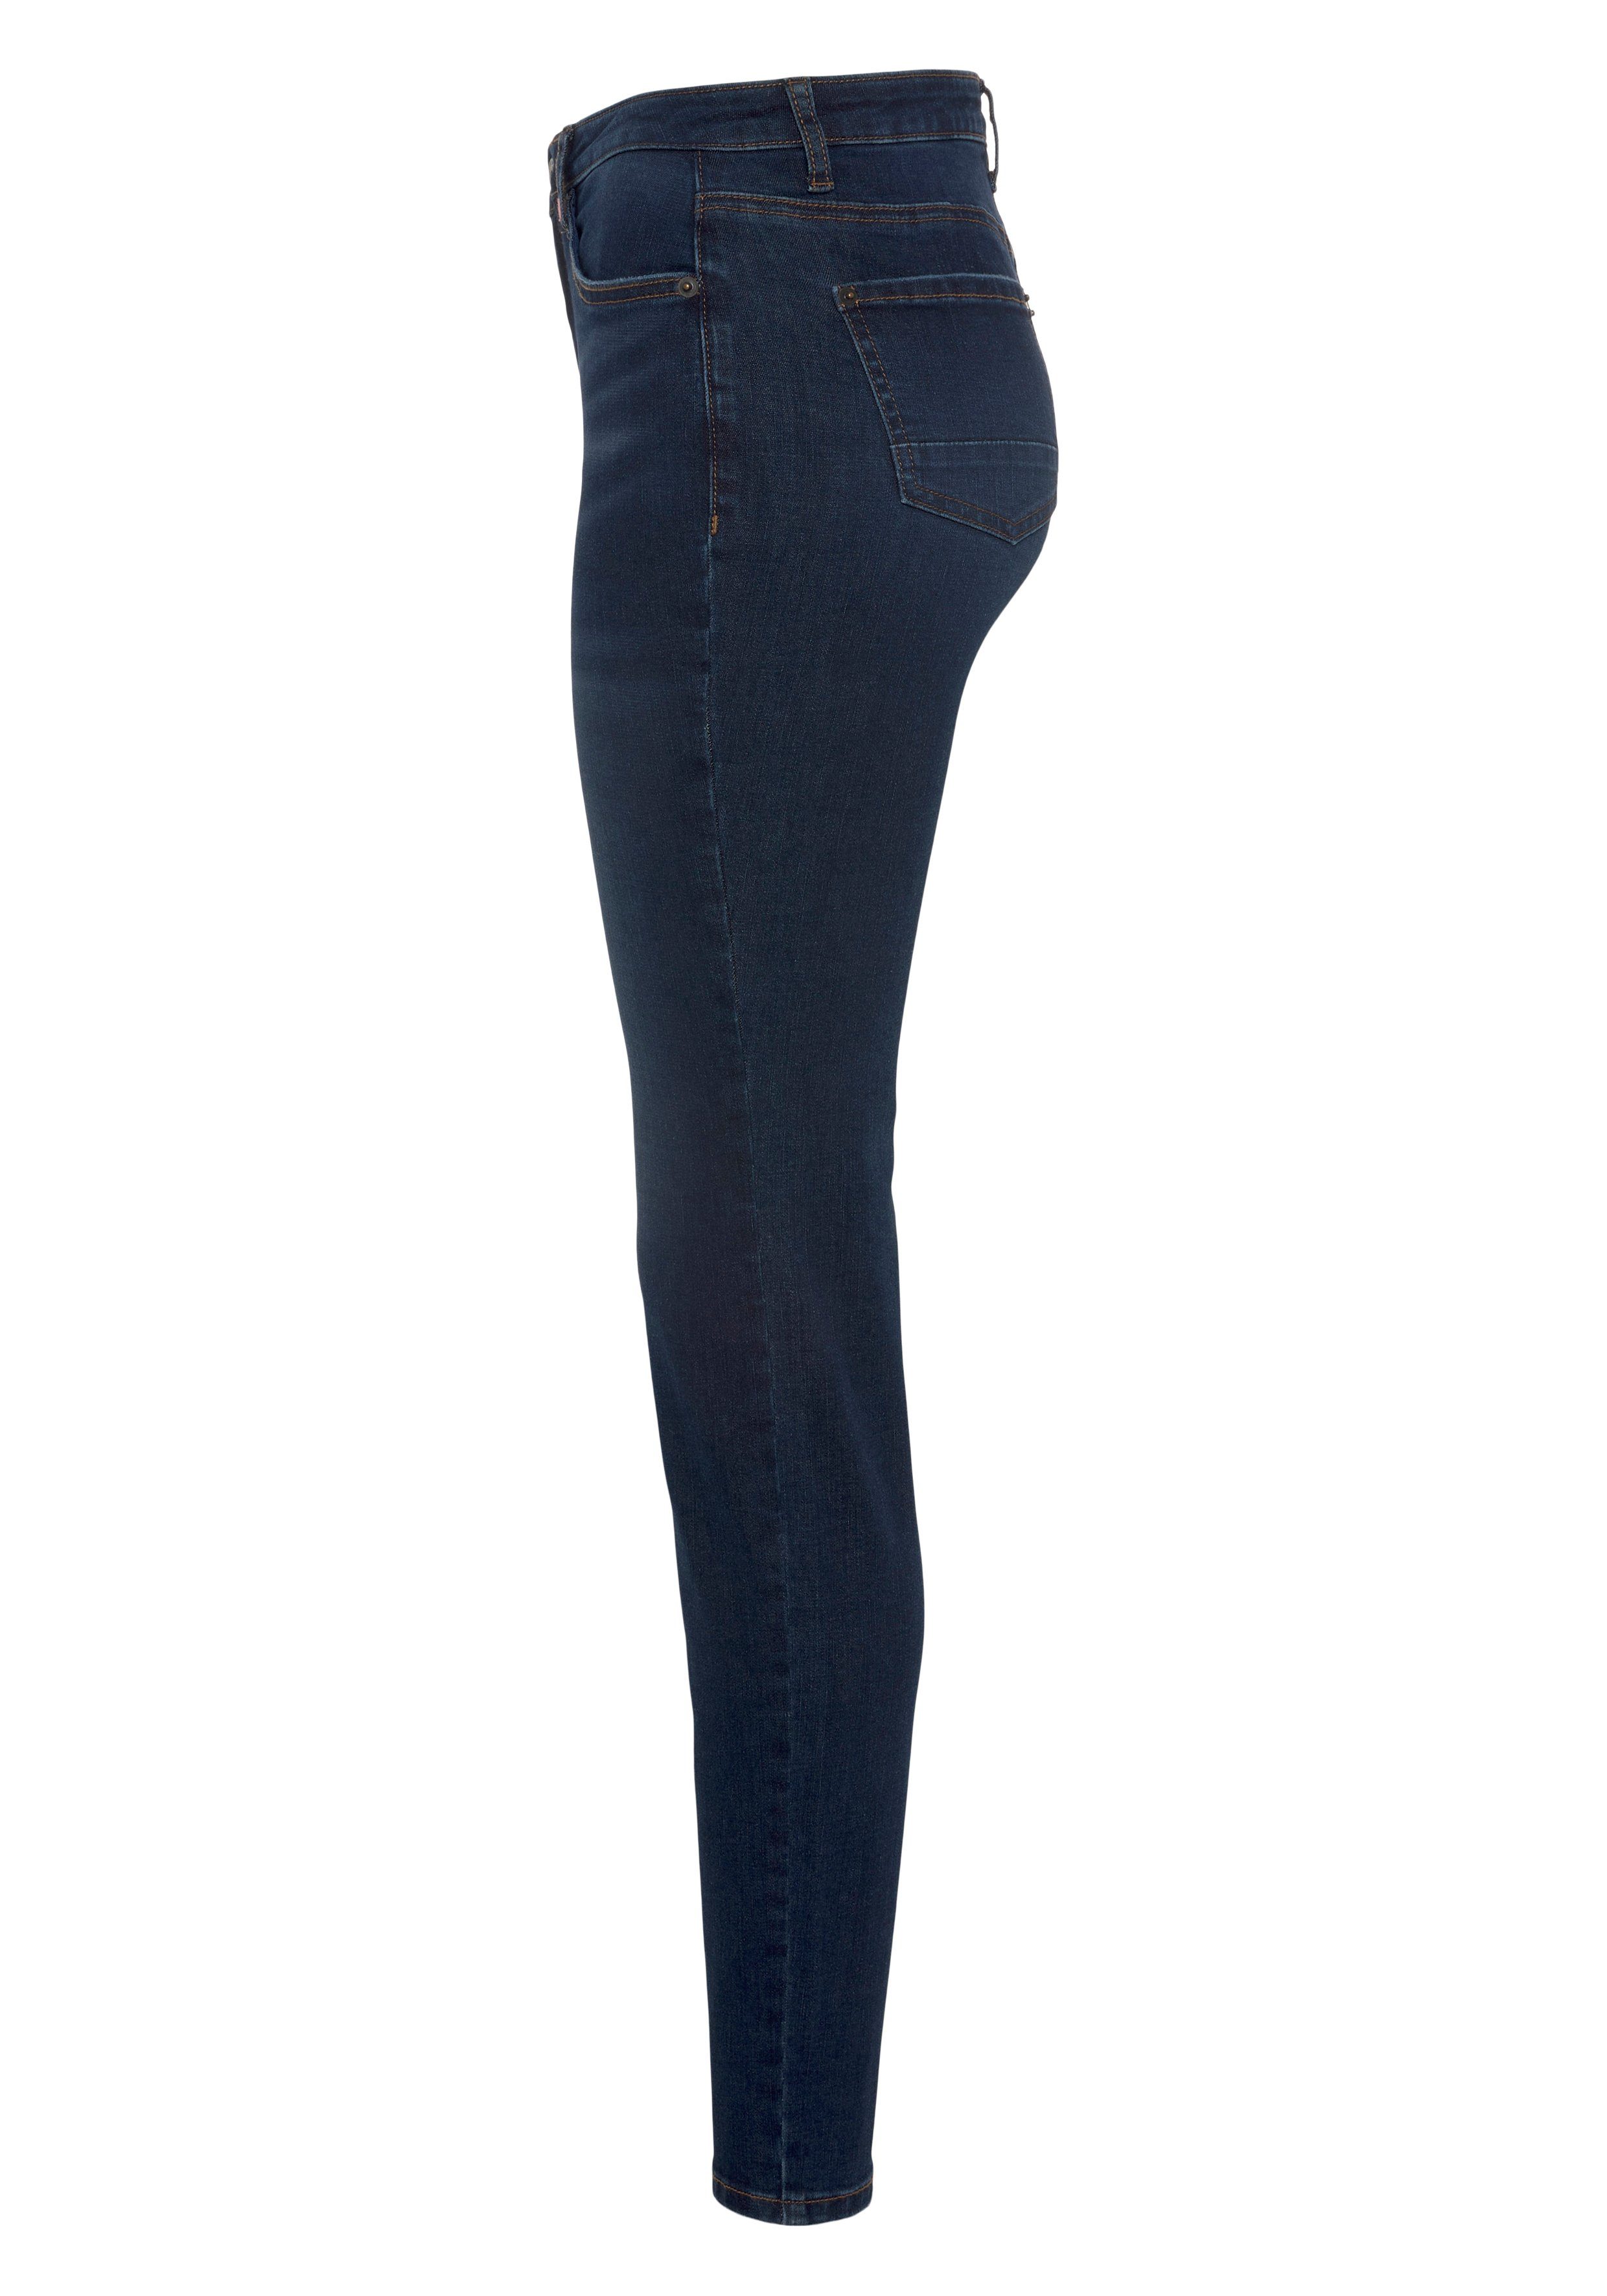 Alife & Kickin High-waist-Jeans Slim-Fit NolaAK KOLLEKTION NEUE dark blue used